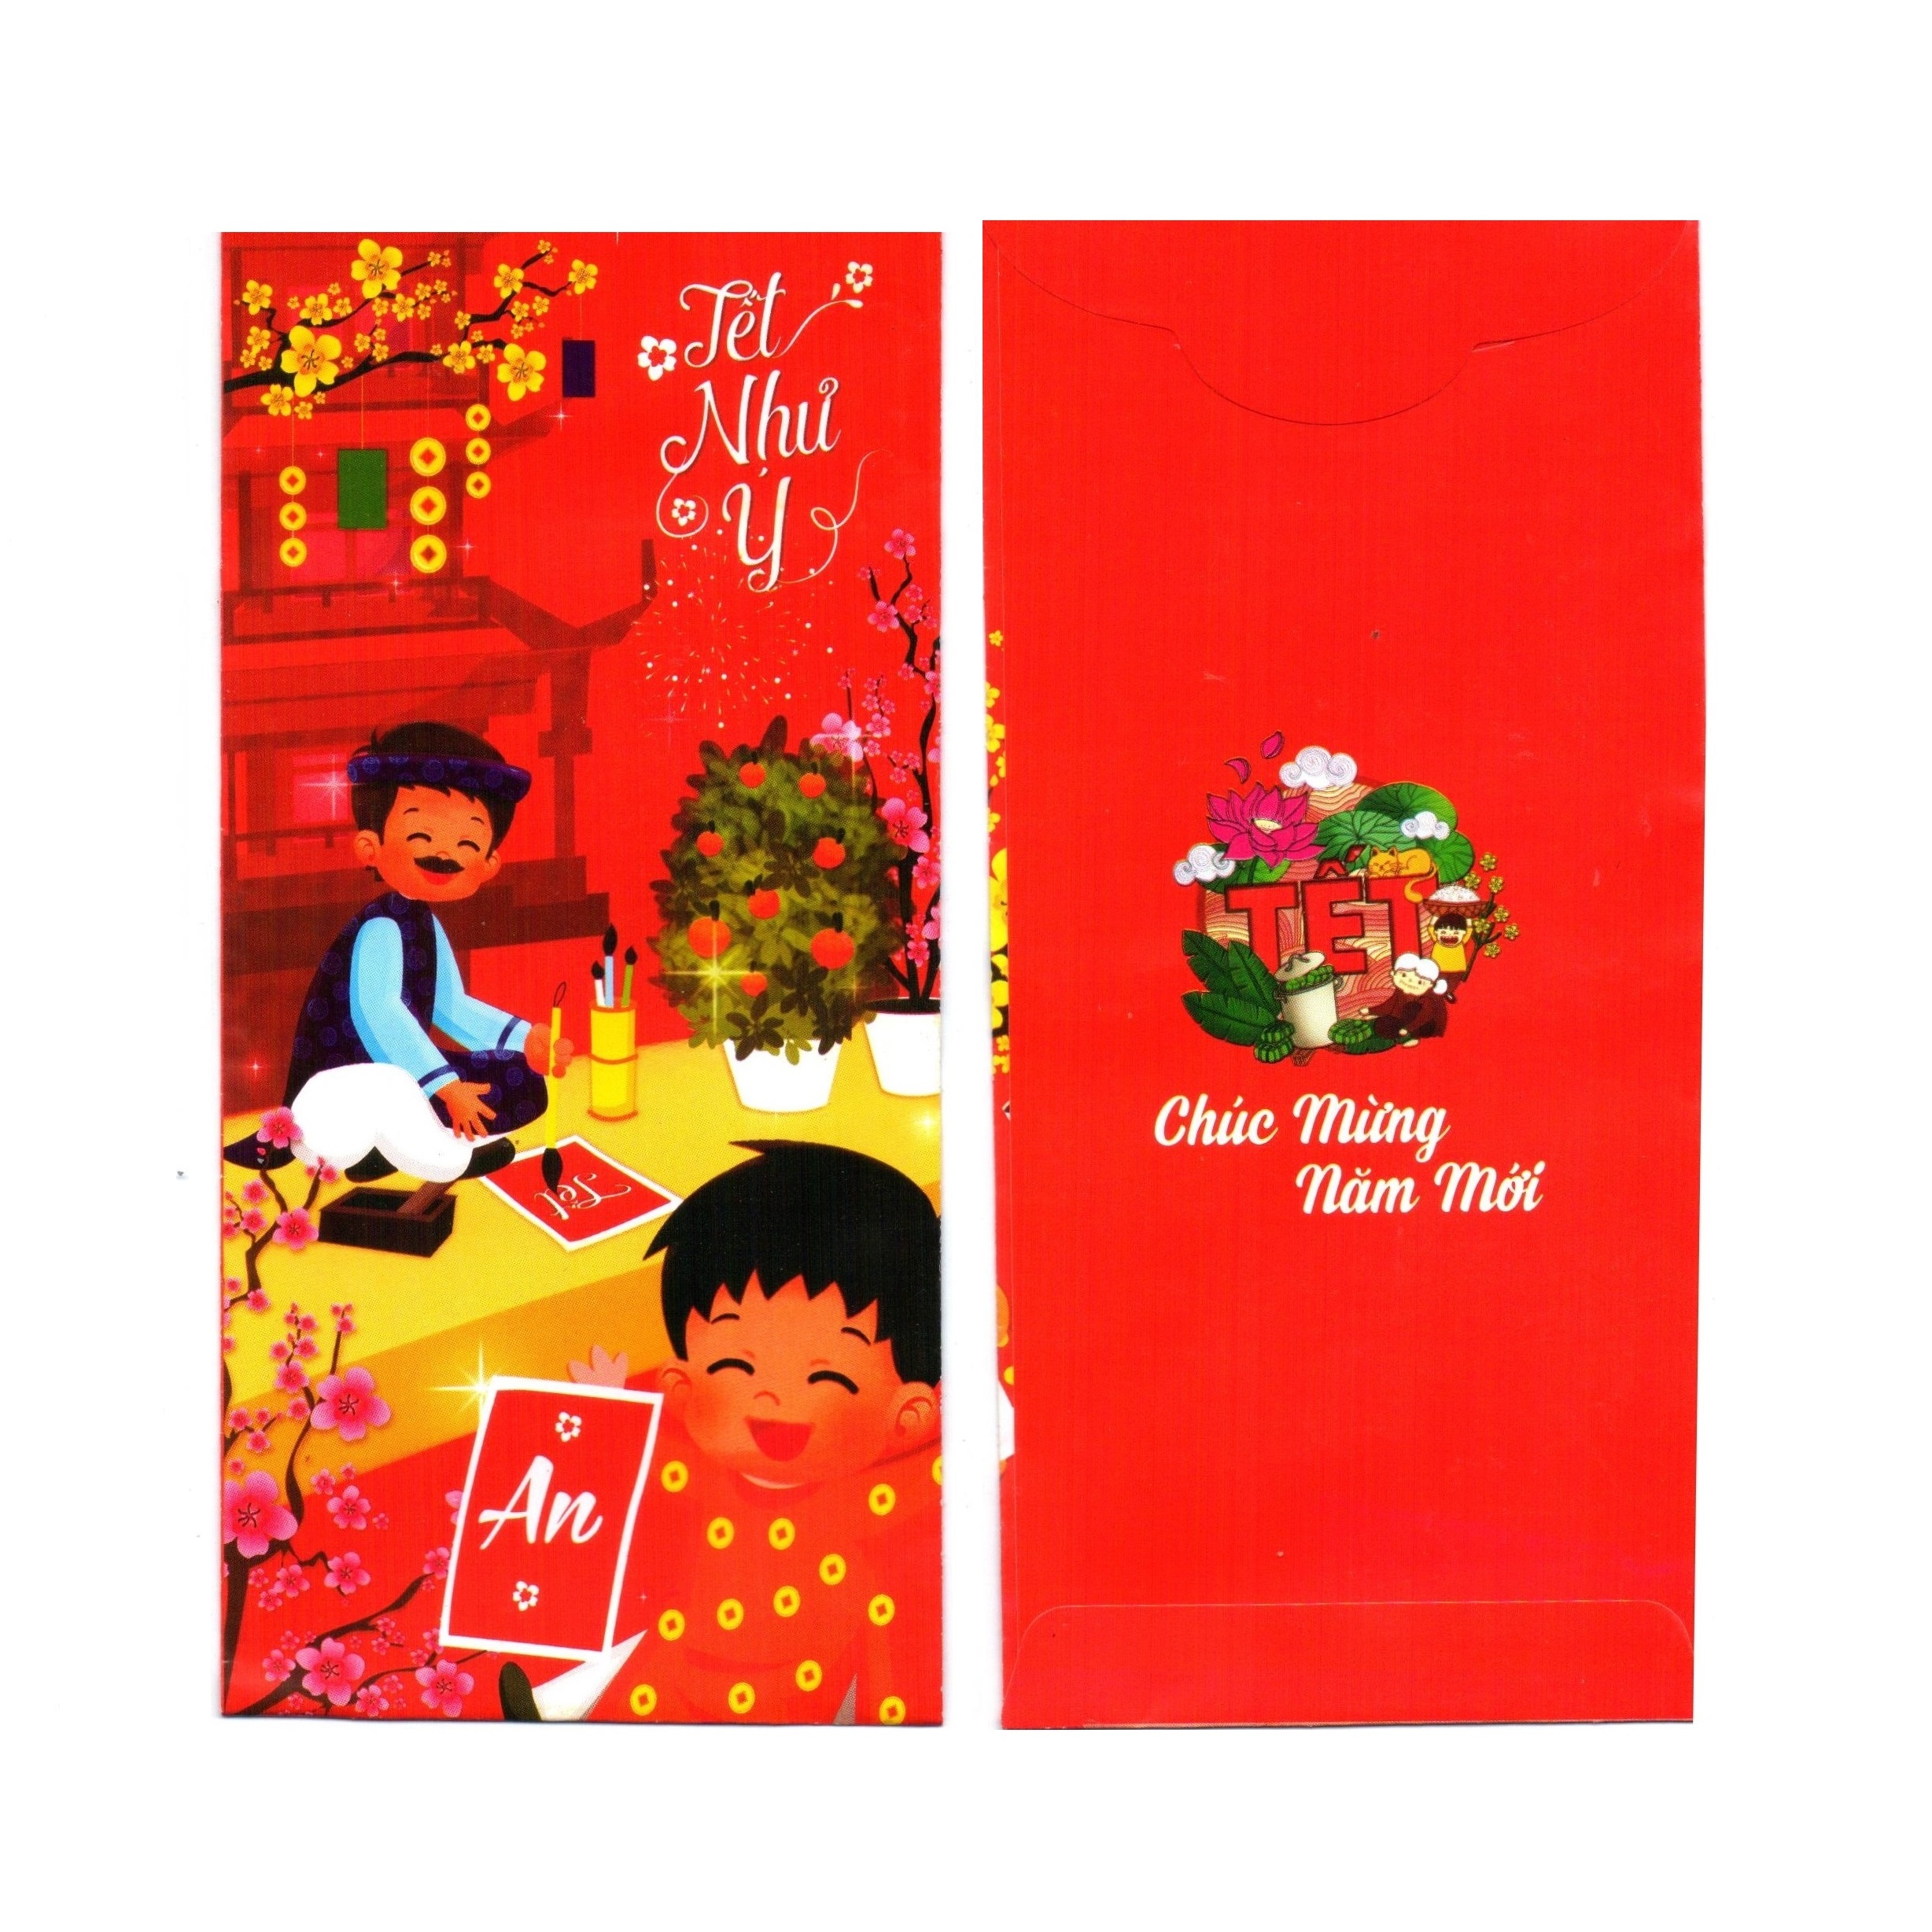 Xấp Bao lì xì truyền thống An Khang - Sung Túc - Như Ý - Bình An - Phú Quý - Phát Tài - Trẻ Trung - Mạnh Khỏe